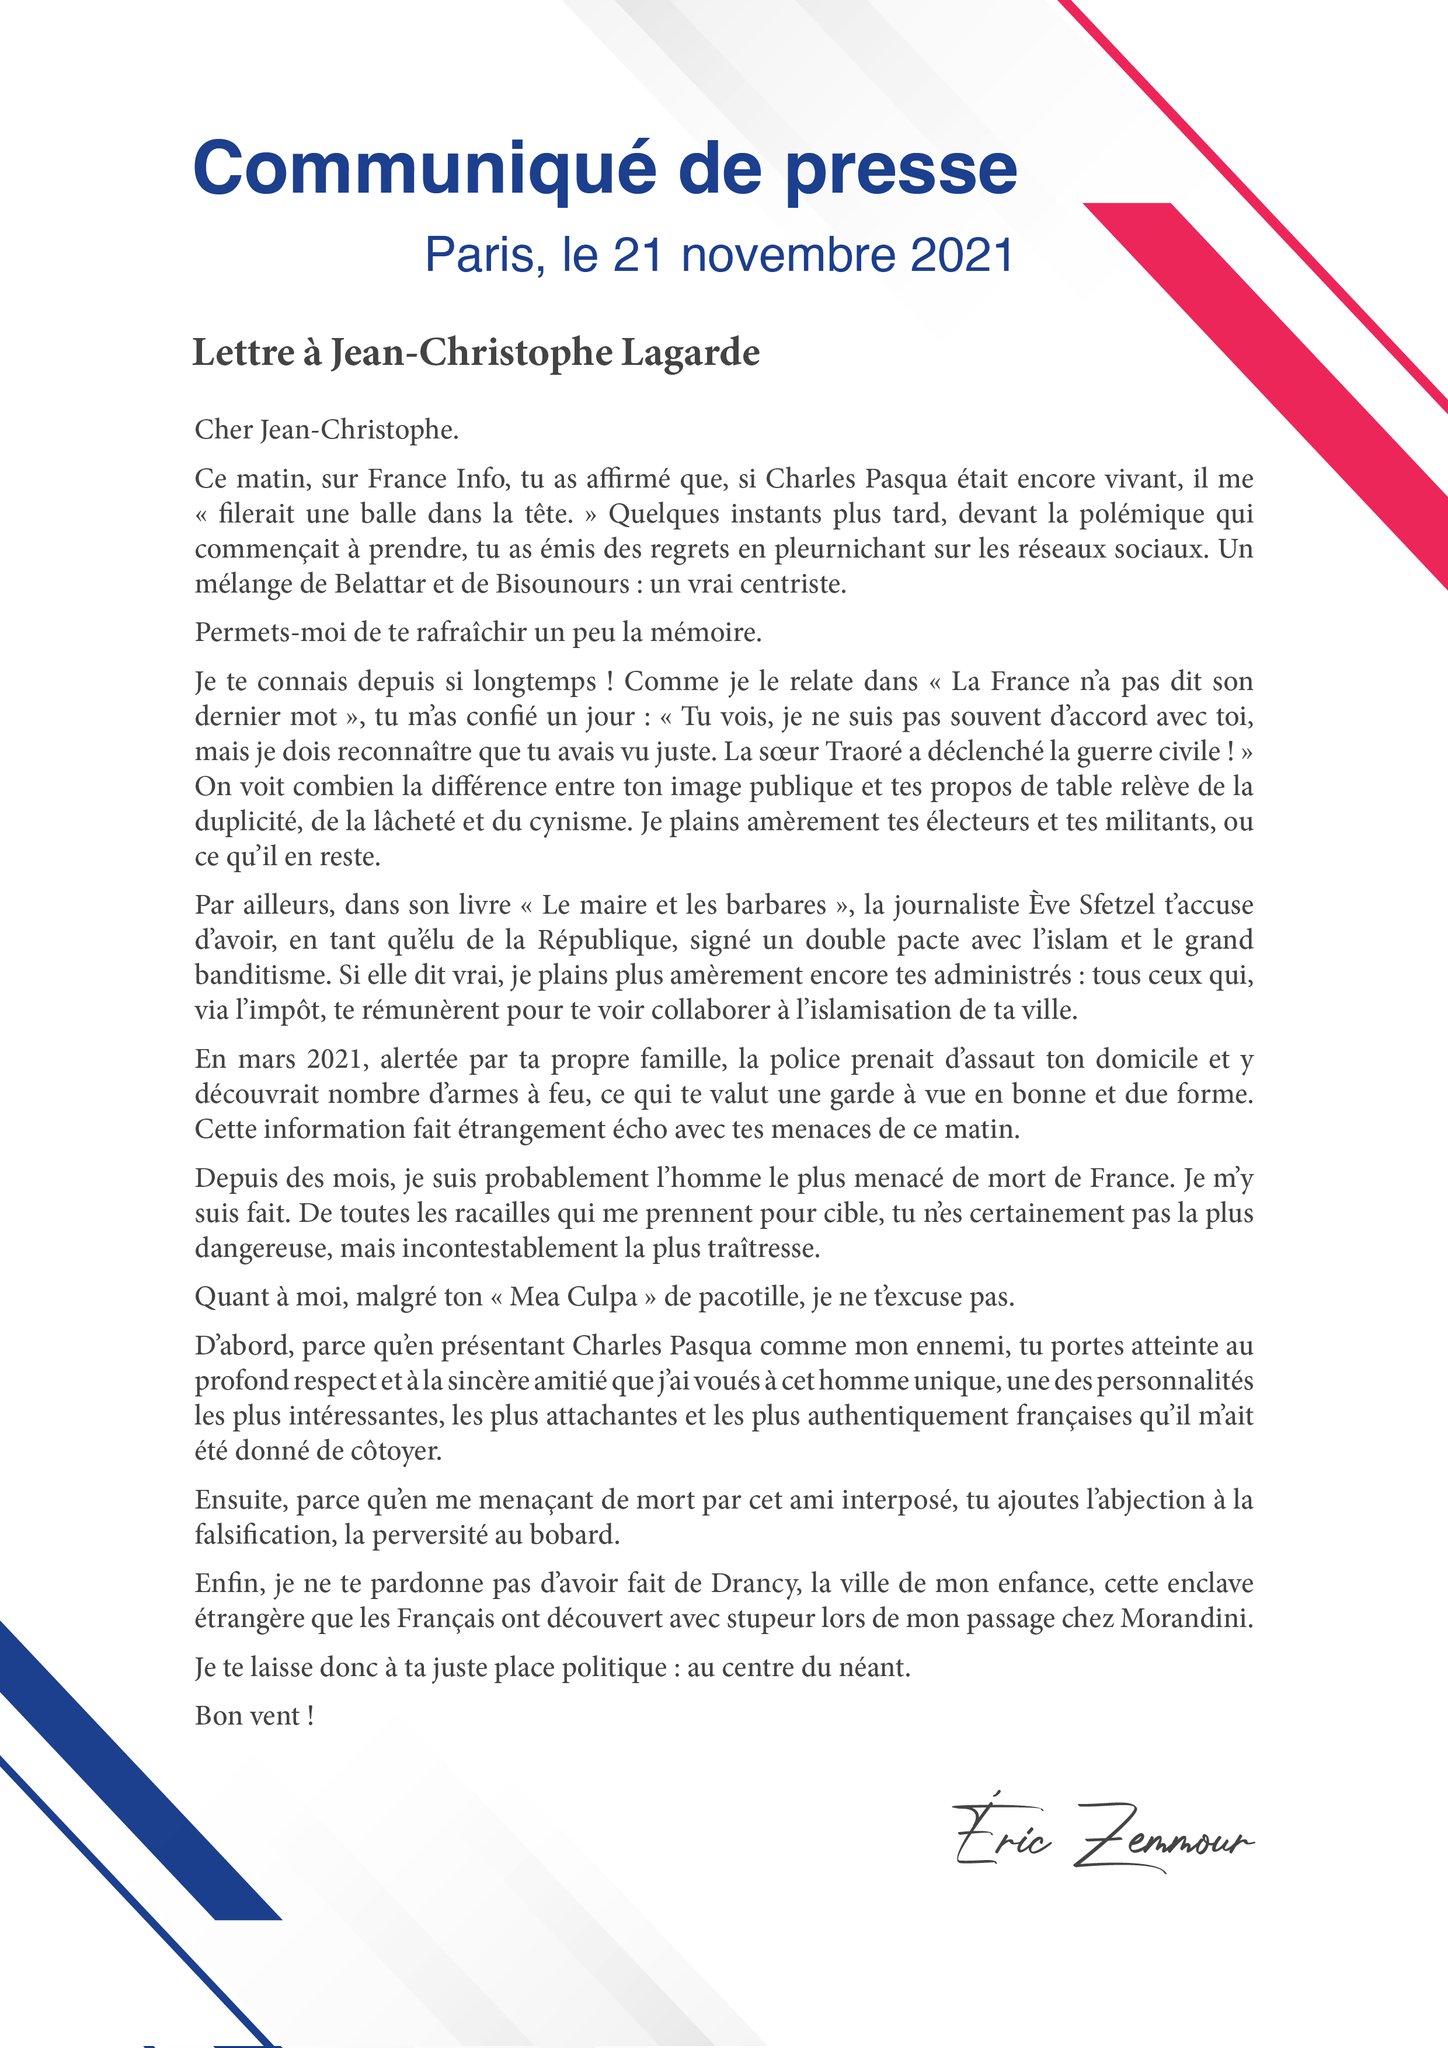 Communiqué de presse d'Eric ZEMMOUR - Paris, le 21 novembre 2021 - Lettre à Jean-Christophe Lagarde